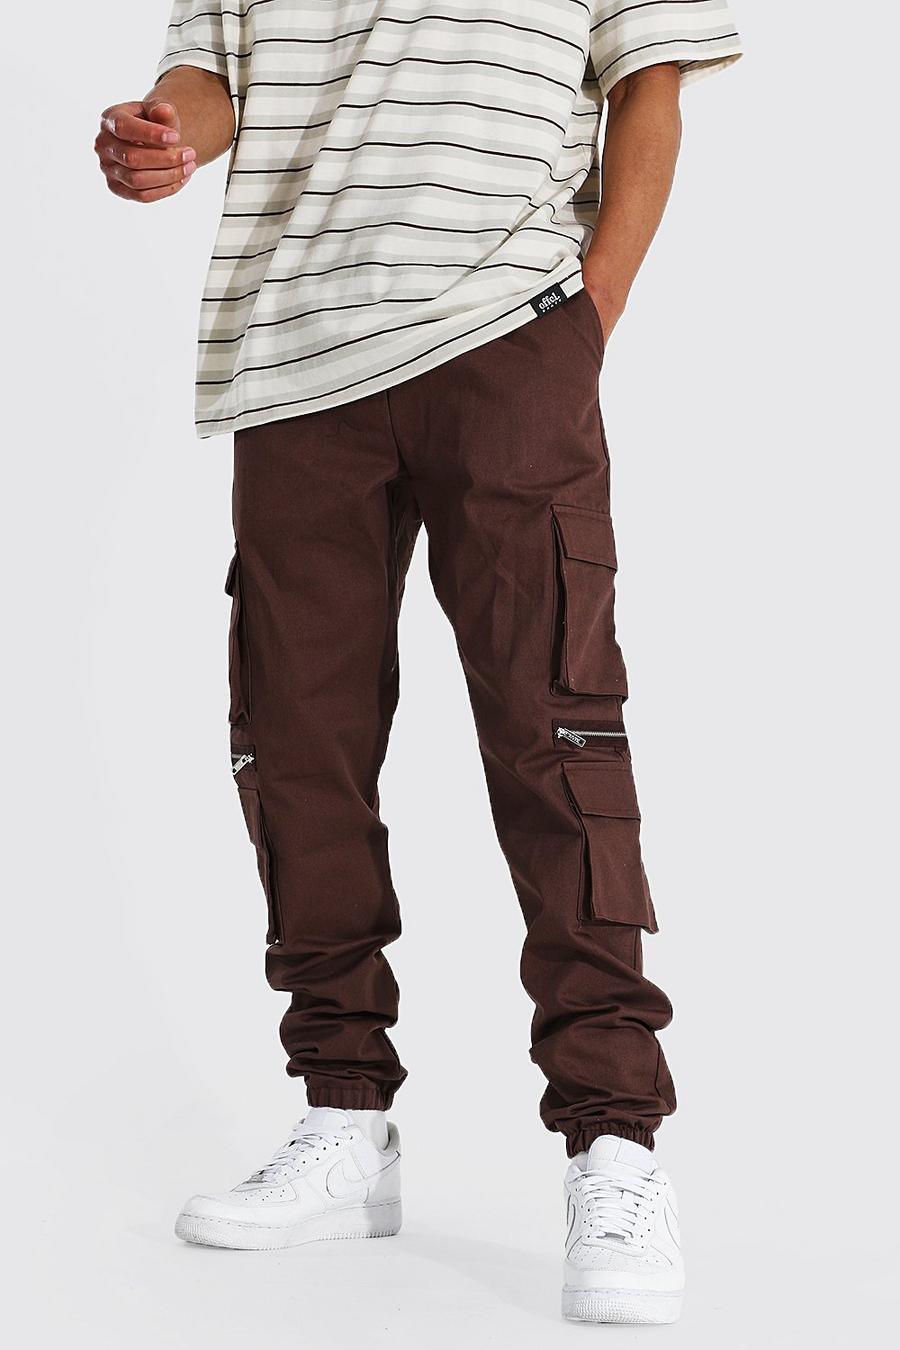 Pantalón corto Tall MAN cargo con cremallera y multibolsillos, Chocolate marrón